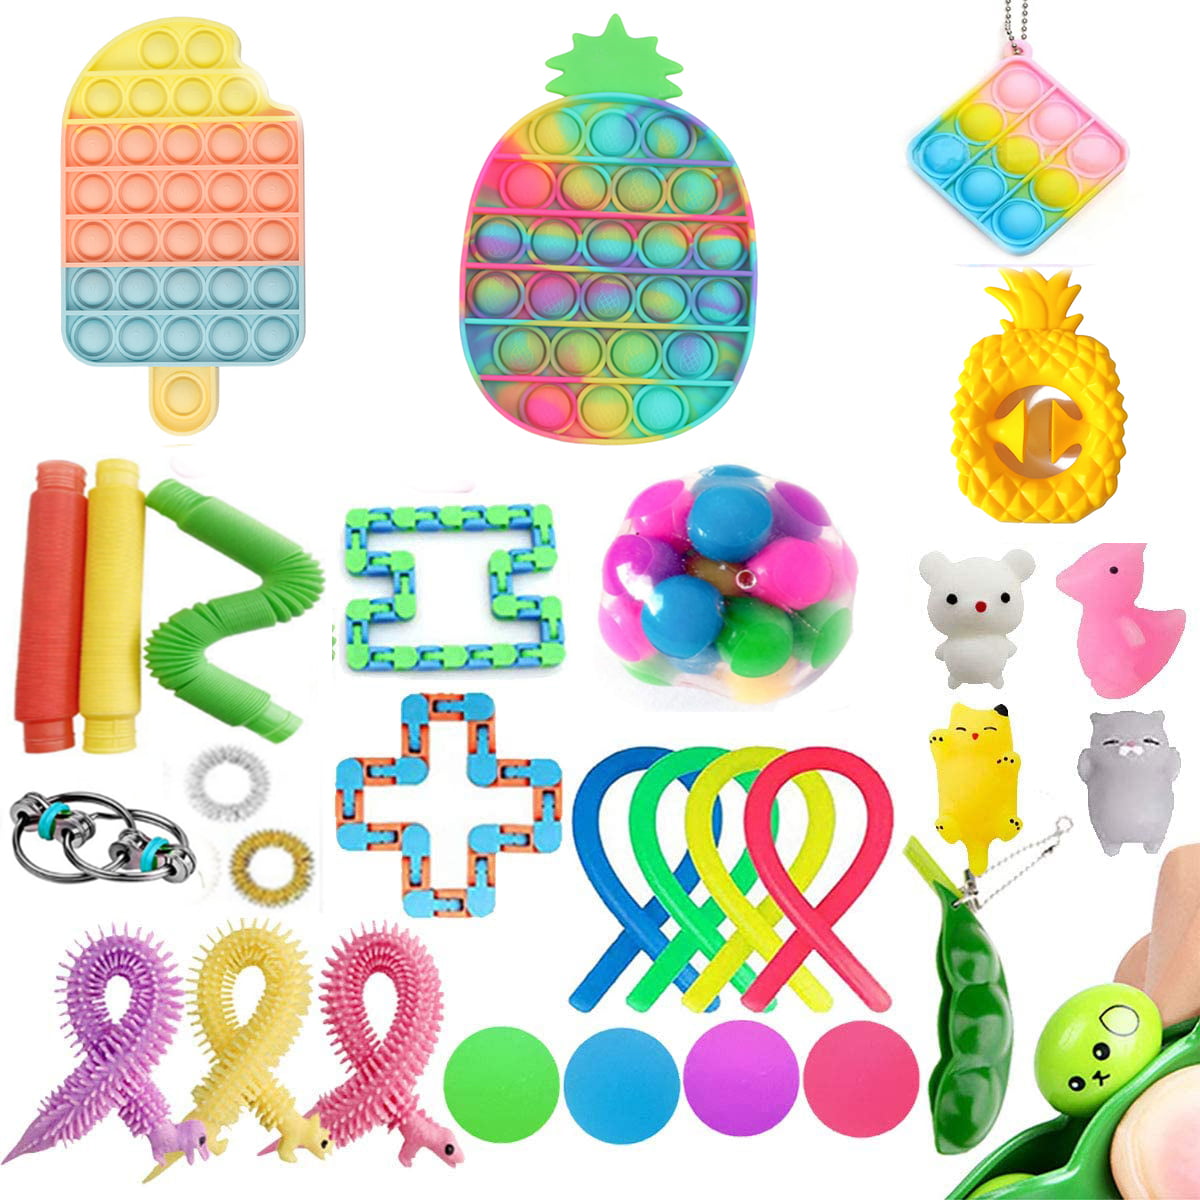 Details about   6-38PCS Fidget Toys Set Sensory Tool Bundle Stress Relief Hand Kids Adults ADHD 